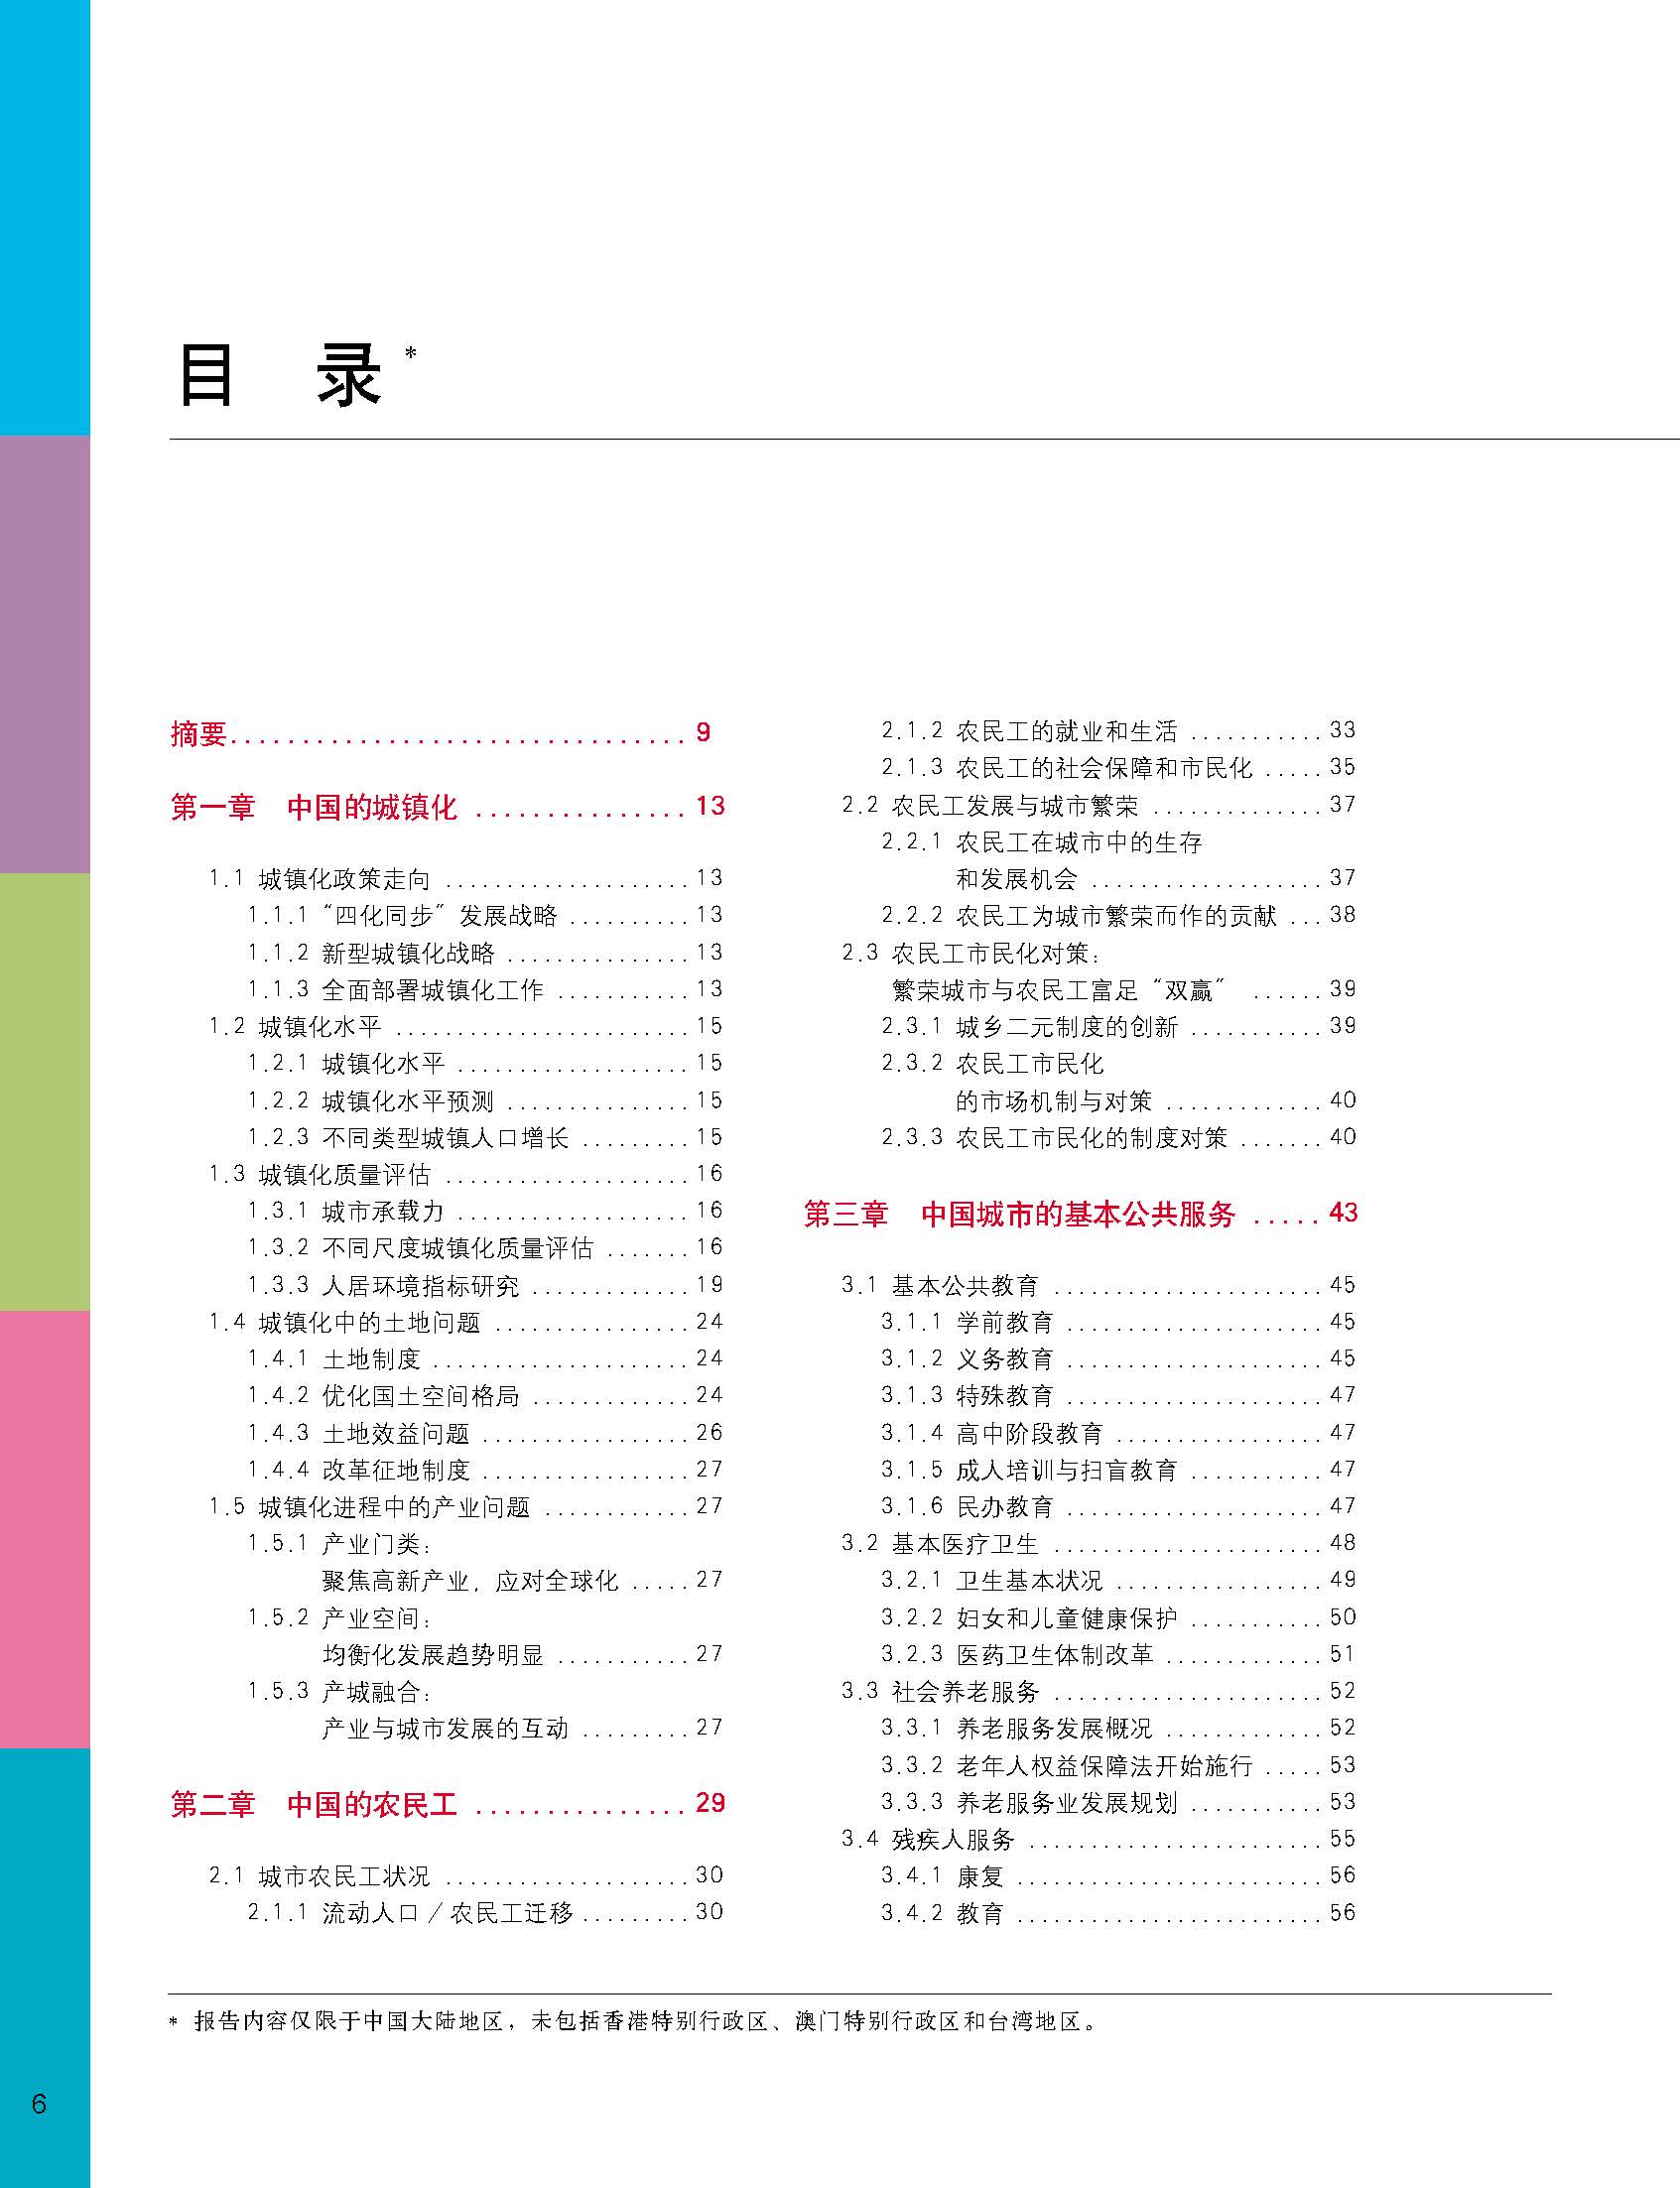 状况报告2014-2015中文 7.jpg